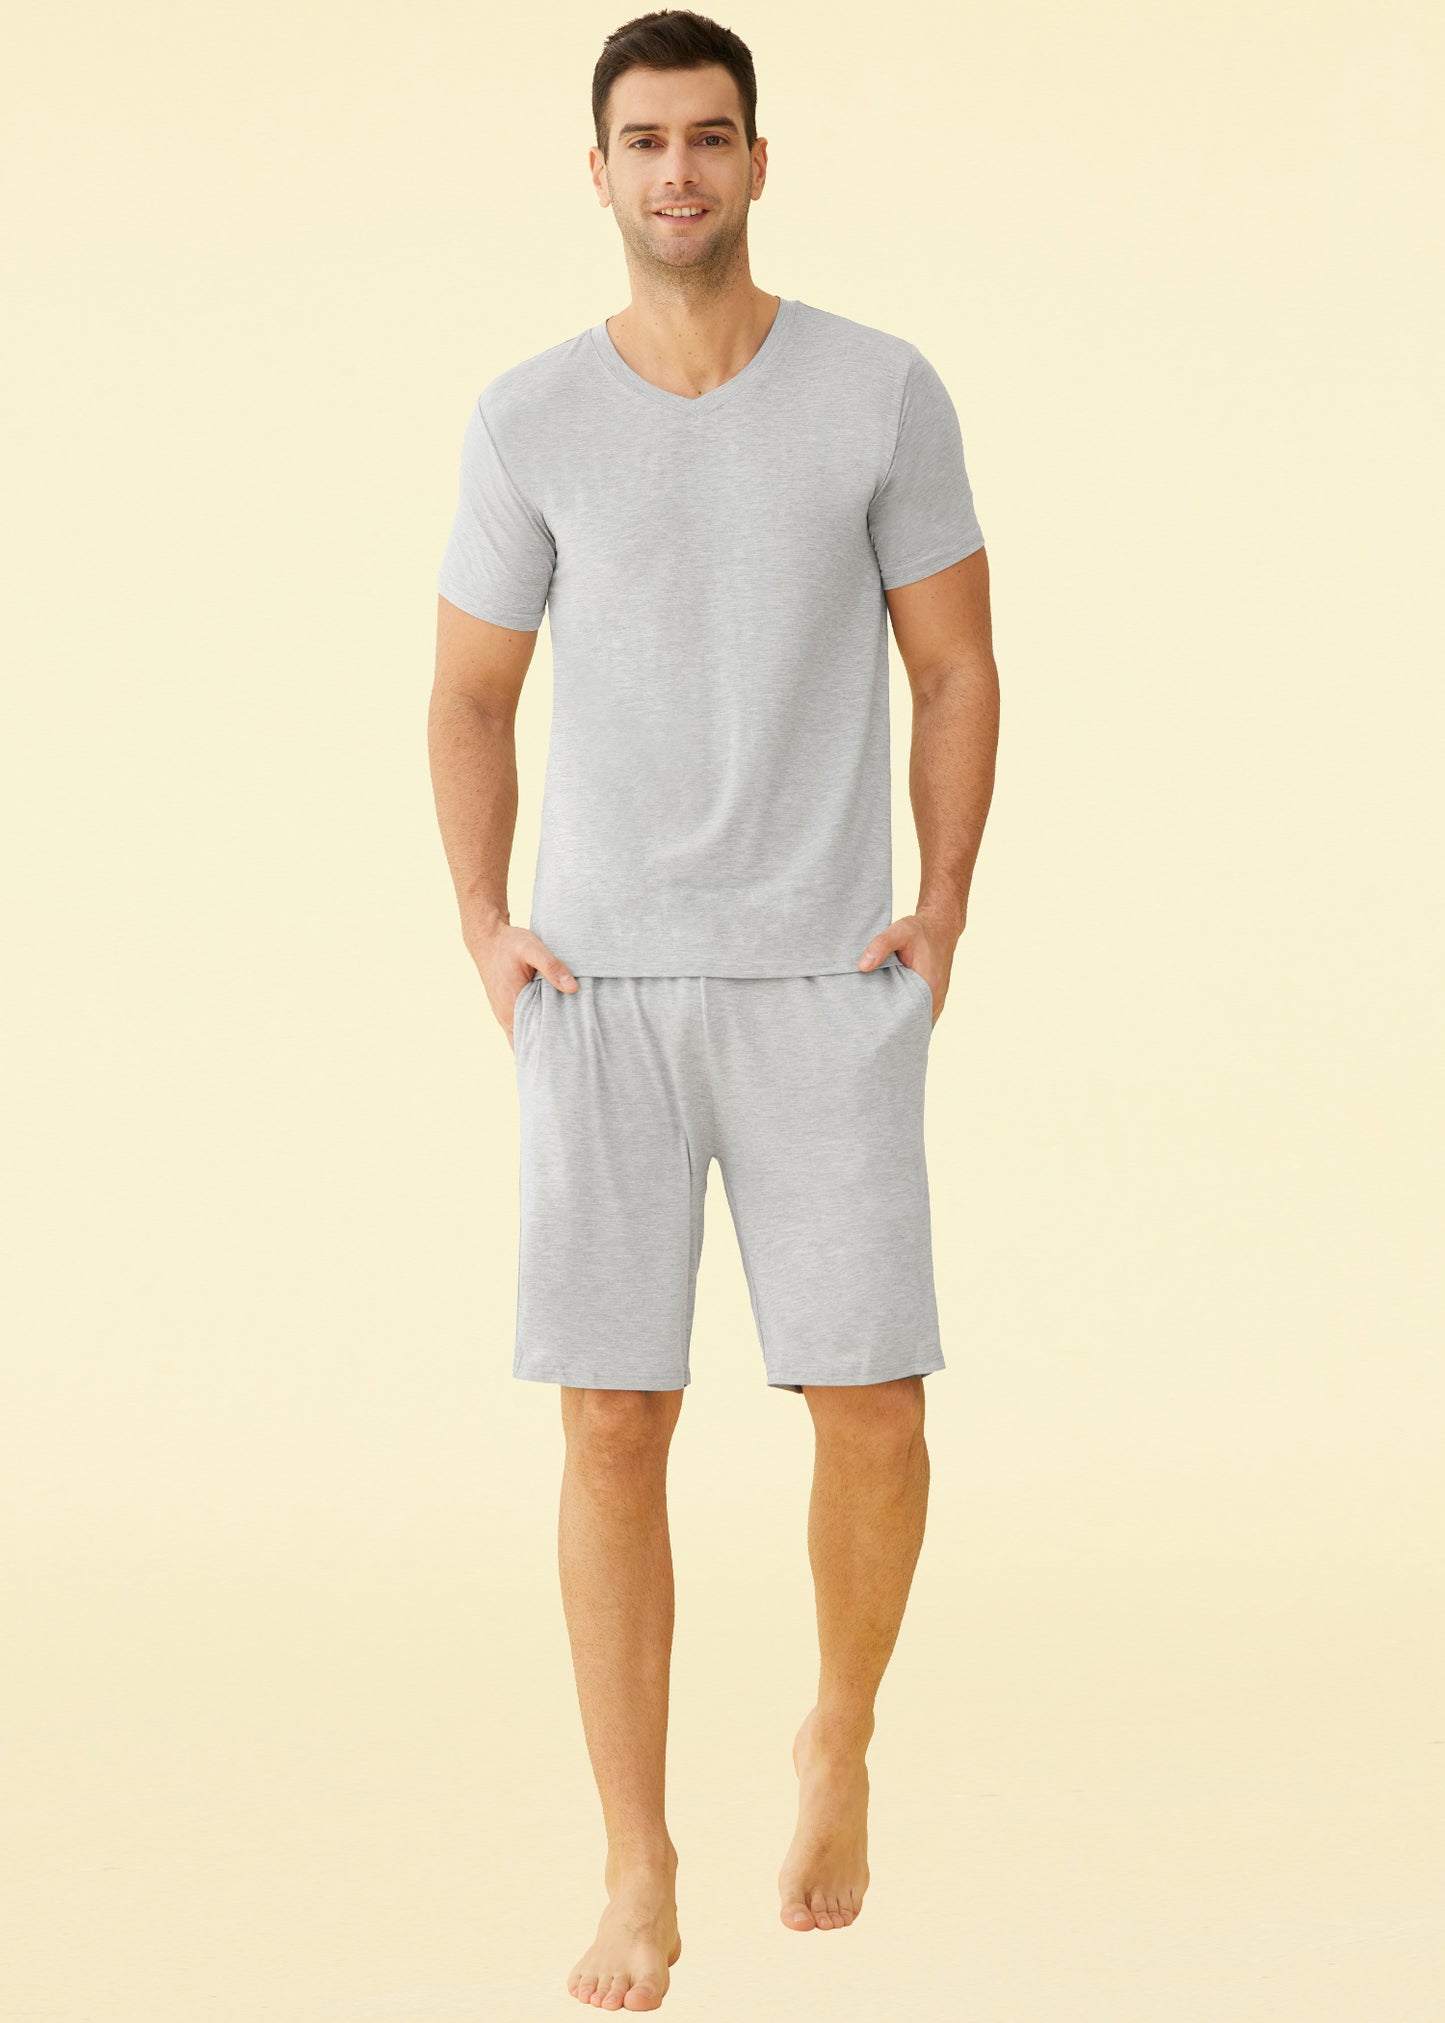 Men’s Short Sleeves and Shorts Pajama Set